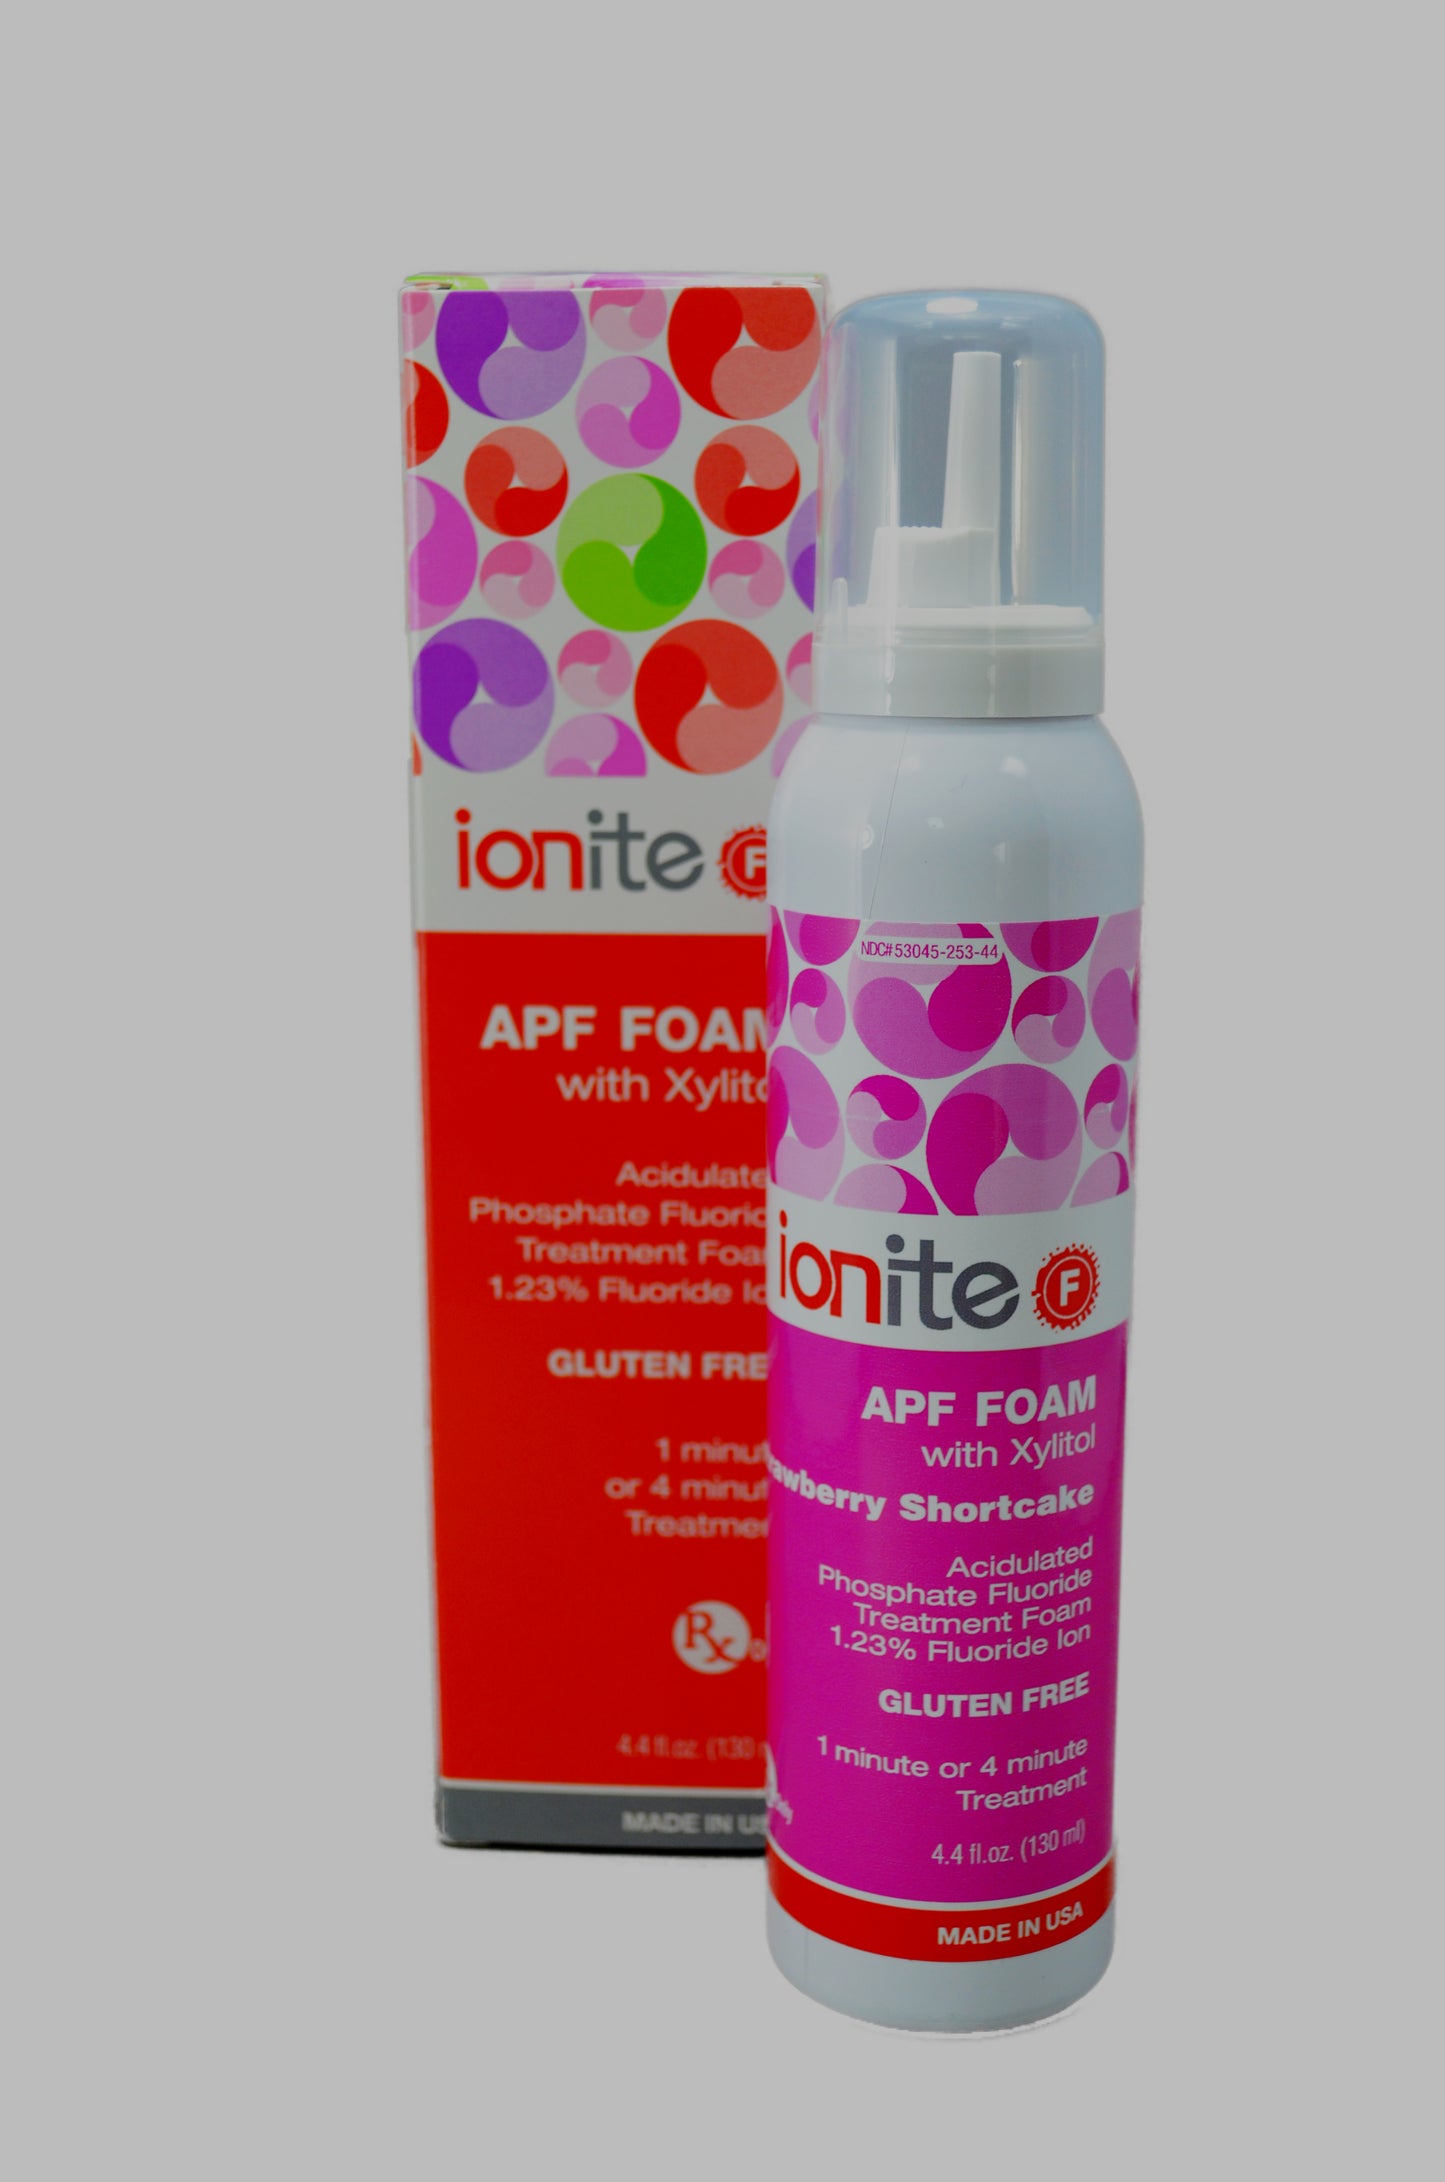 Ionite F APF Foam 1.23% Fluoride